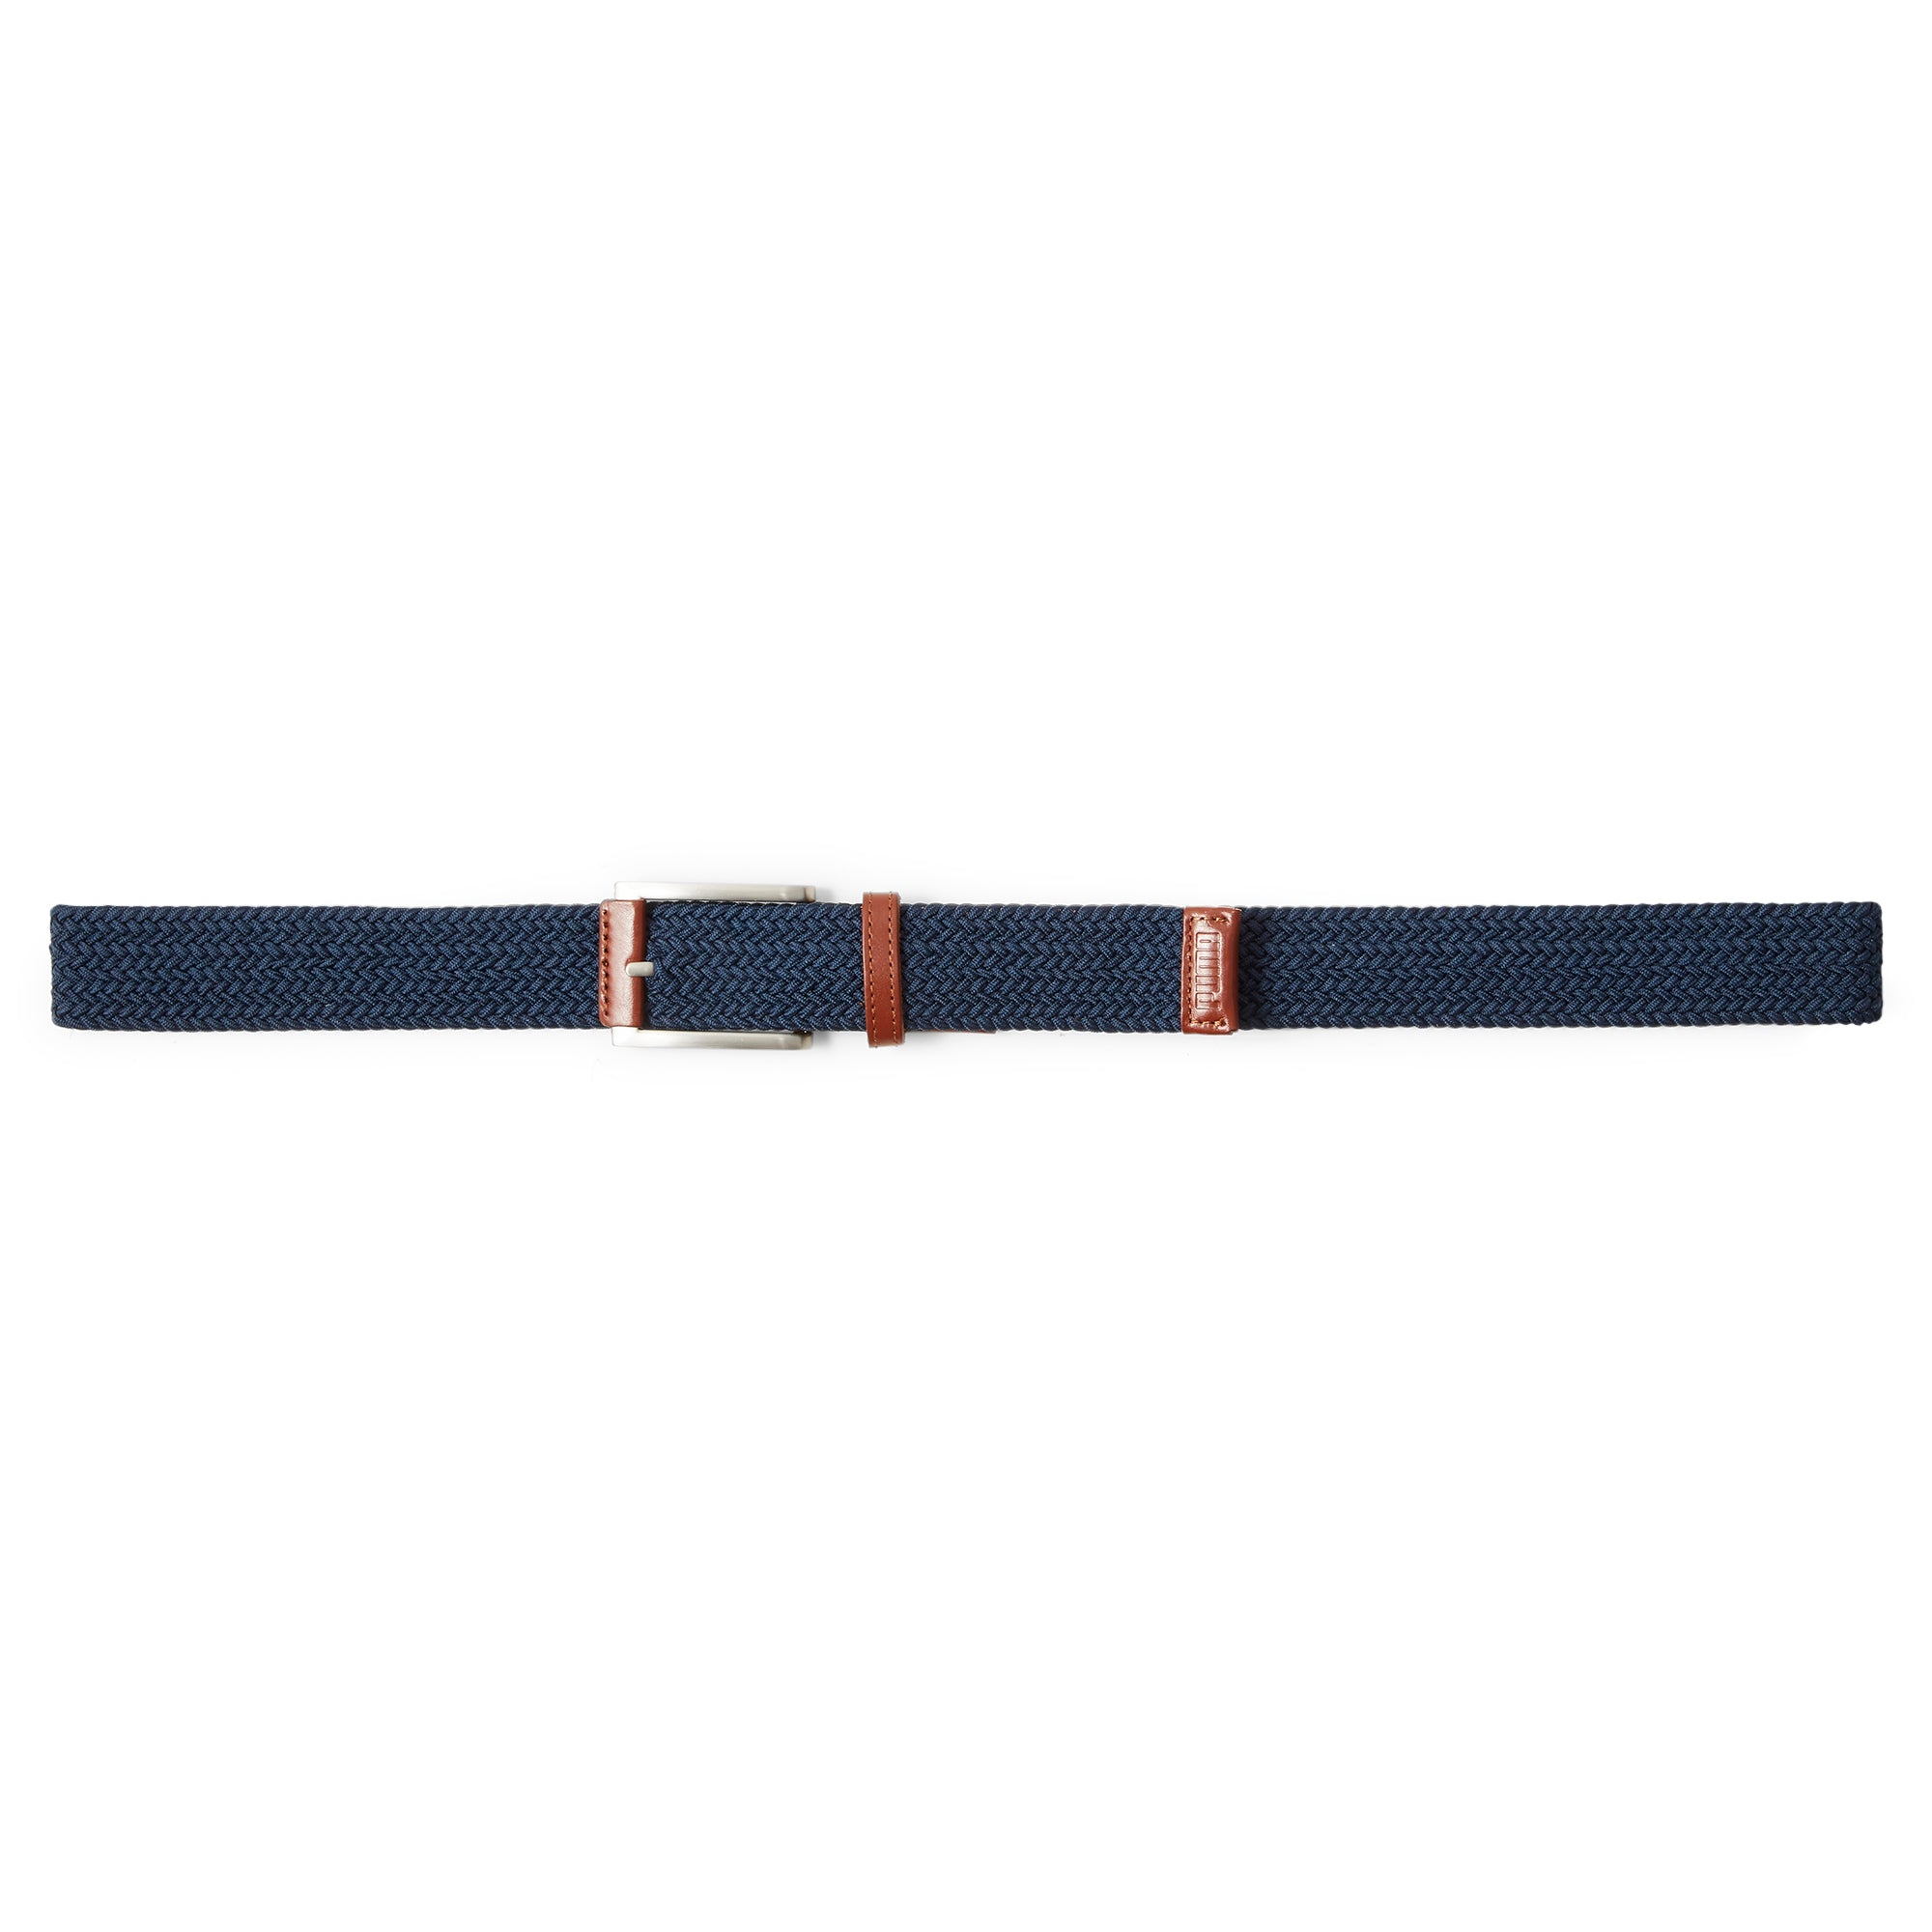 puma-golf-jackpot-braided-belt-054213-navy-blazer-leather-brown-02